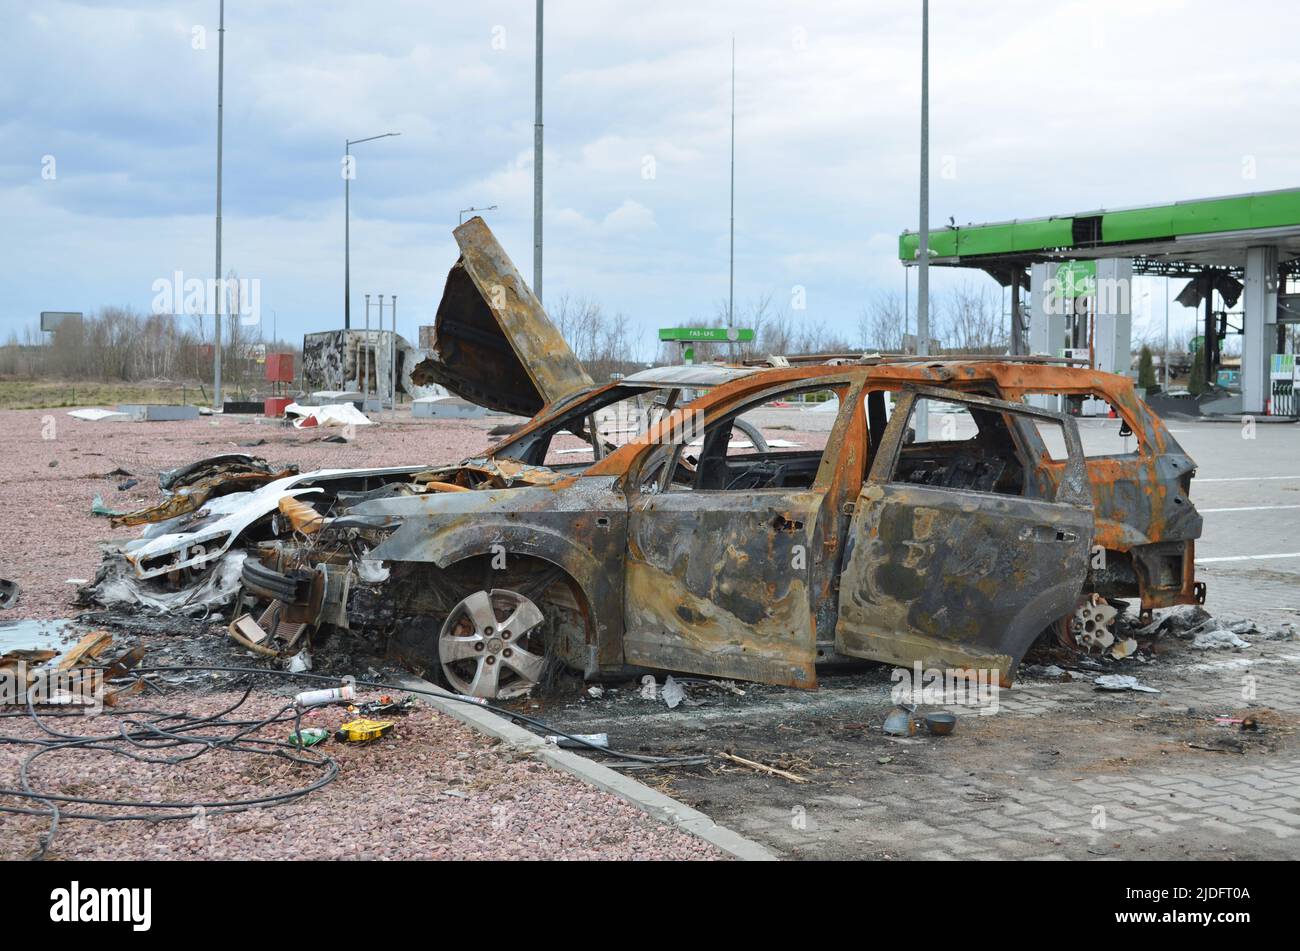 Myla, regione di Kiev, Ucraina - 11 aprile 2022: Auto civile bruciata e rotta nella regione di Kiev durante l'invasione russa dell'Ucraina. Foto Stock